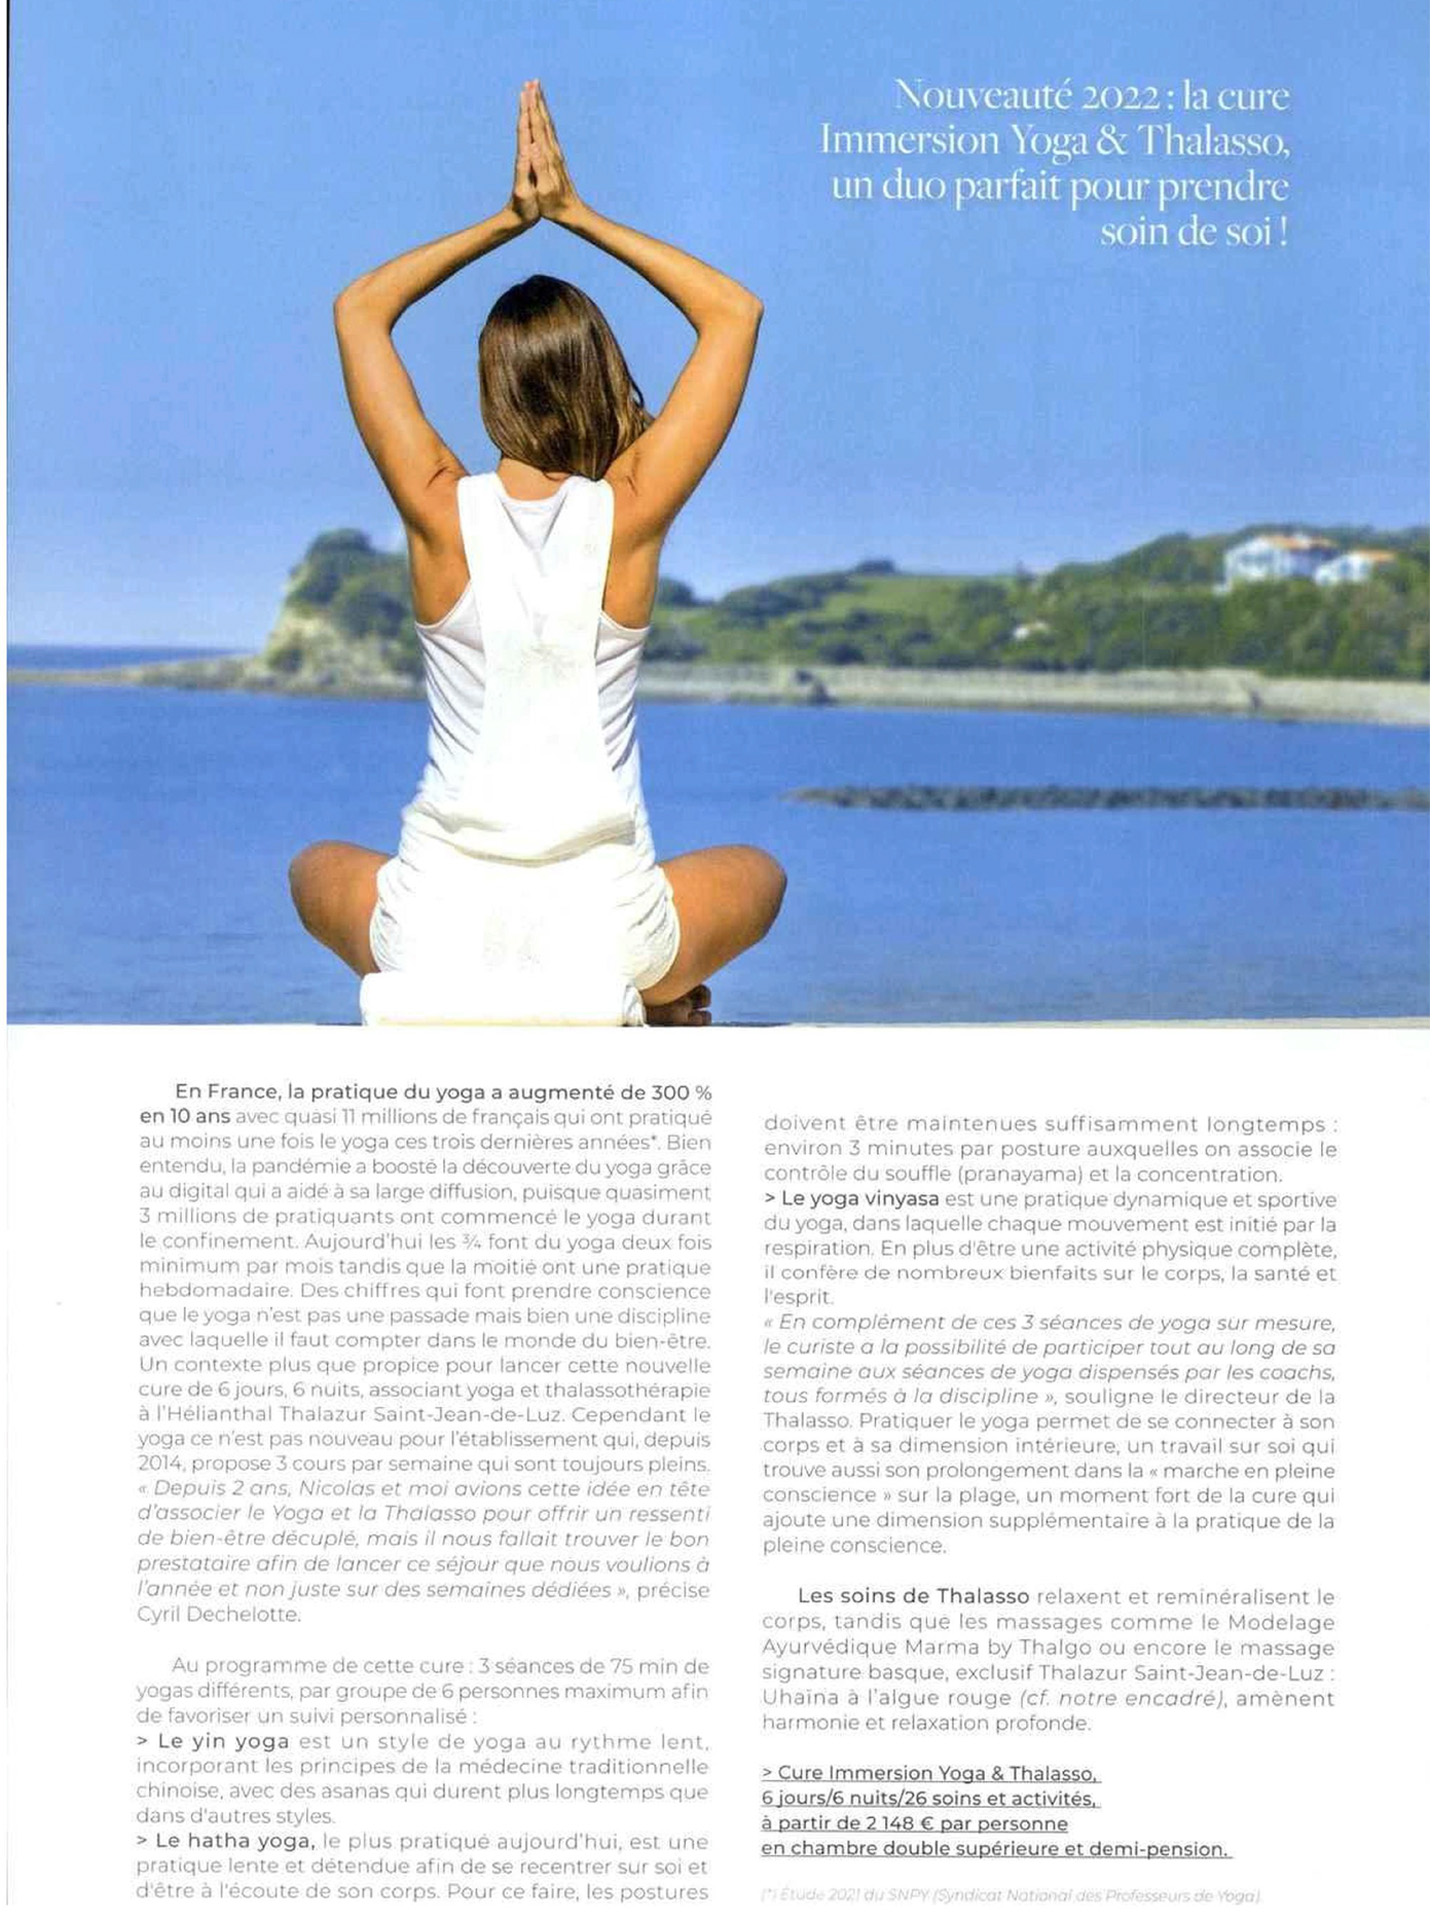 Article du magazine Sense of Wellness sur l'hôtel et spa Hélianthal Saint-Jean-de-Luz, hôtel lifestyle, Art déco, hotel de bord de mer, dans le pays basque français, culture basque